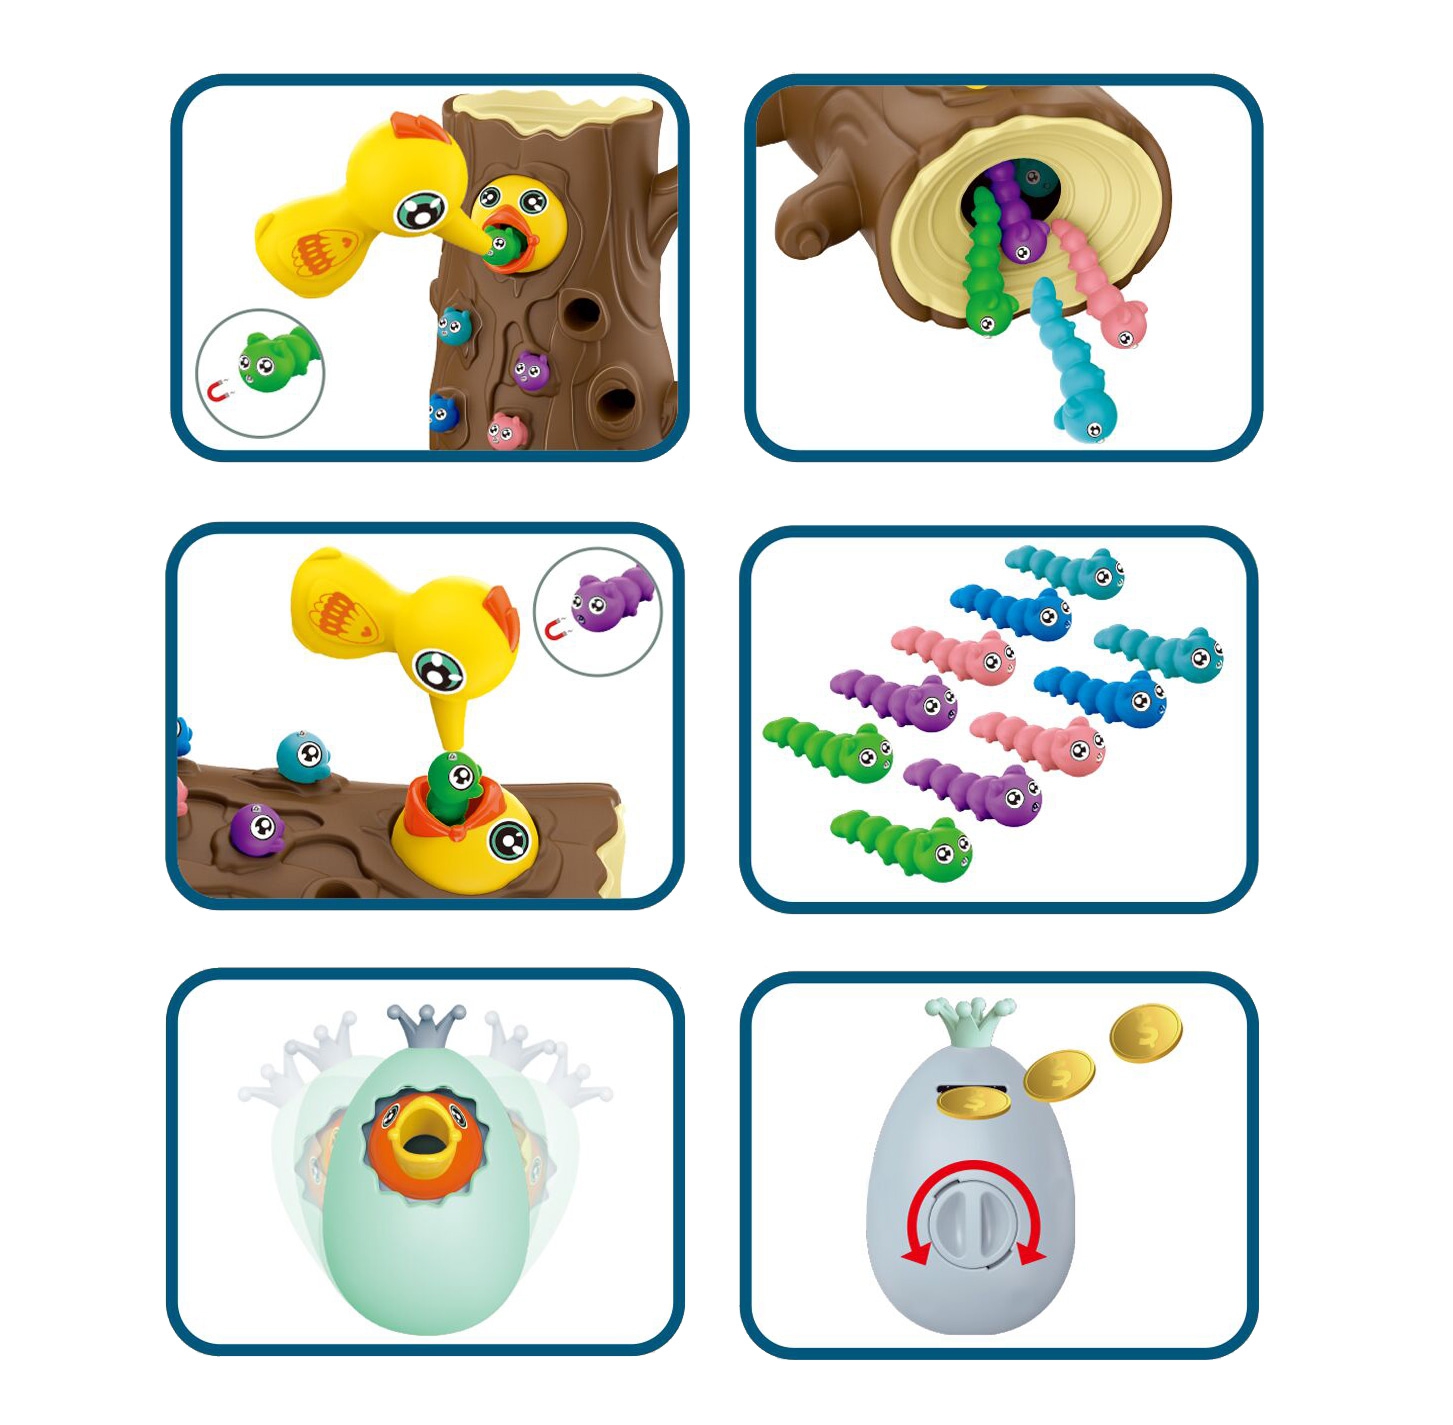 Gra zręcznościowa złap robaczka + skarbonka wańka wstańka jajko, zabawka dla dzieci, Woopie